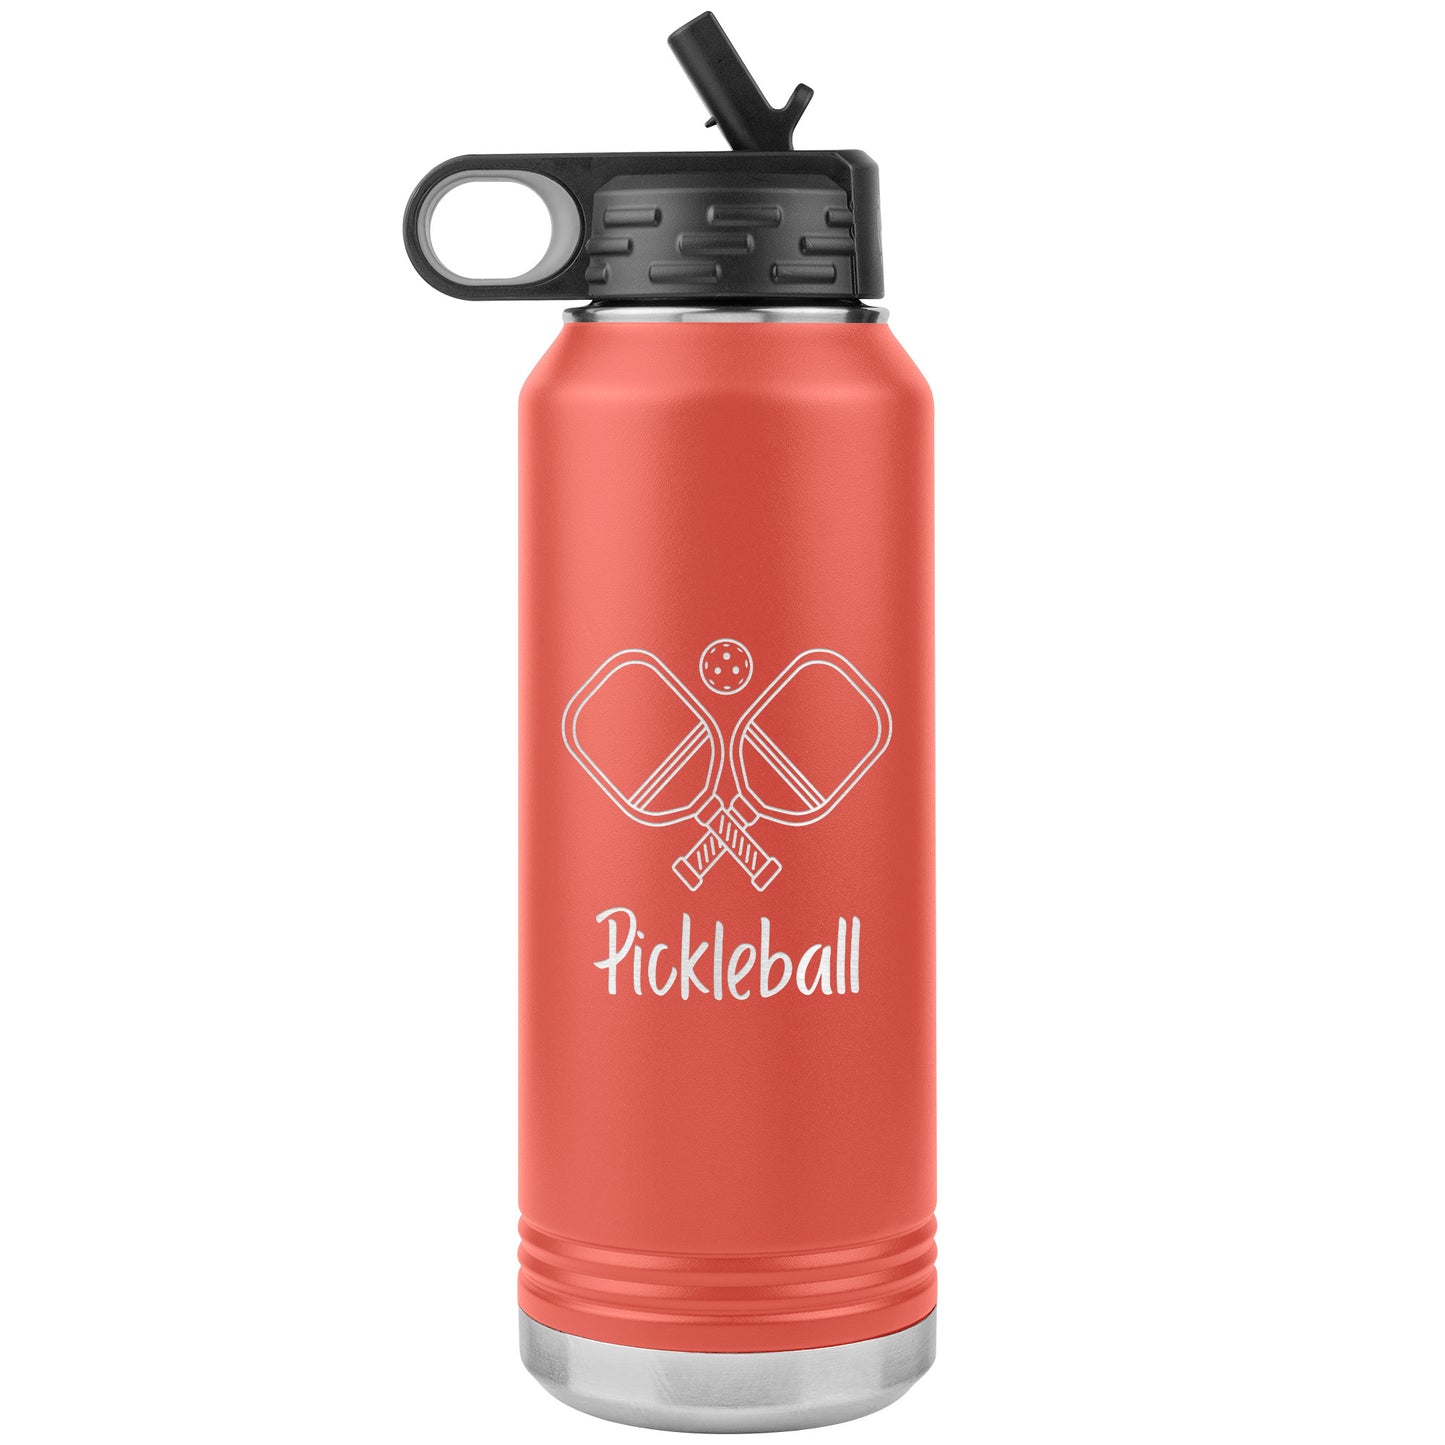 Pickleball Water Bottle Tumbler